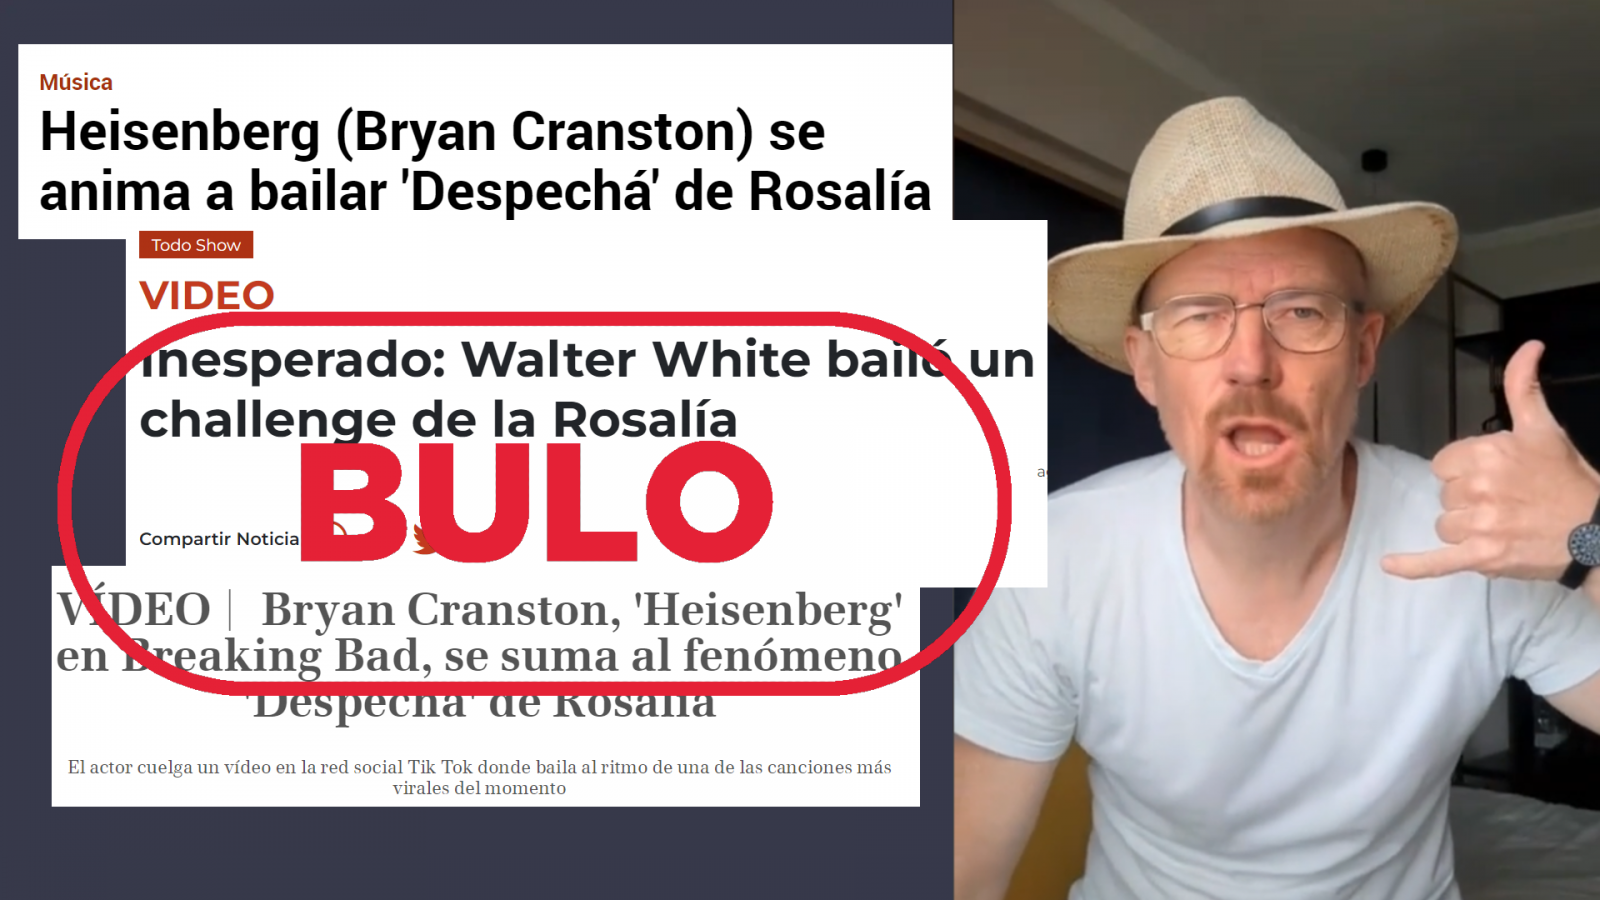 Imágenes de titulares que difunden el bulo de Bryan Cranston bailando 'Despechá' de Rosalía, con el sello de bulo de VerificaRTVE.